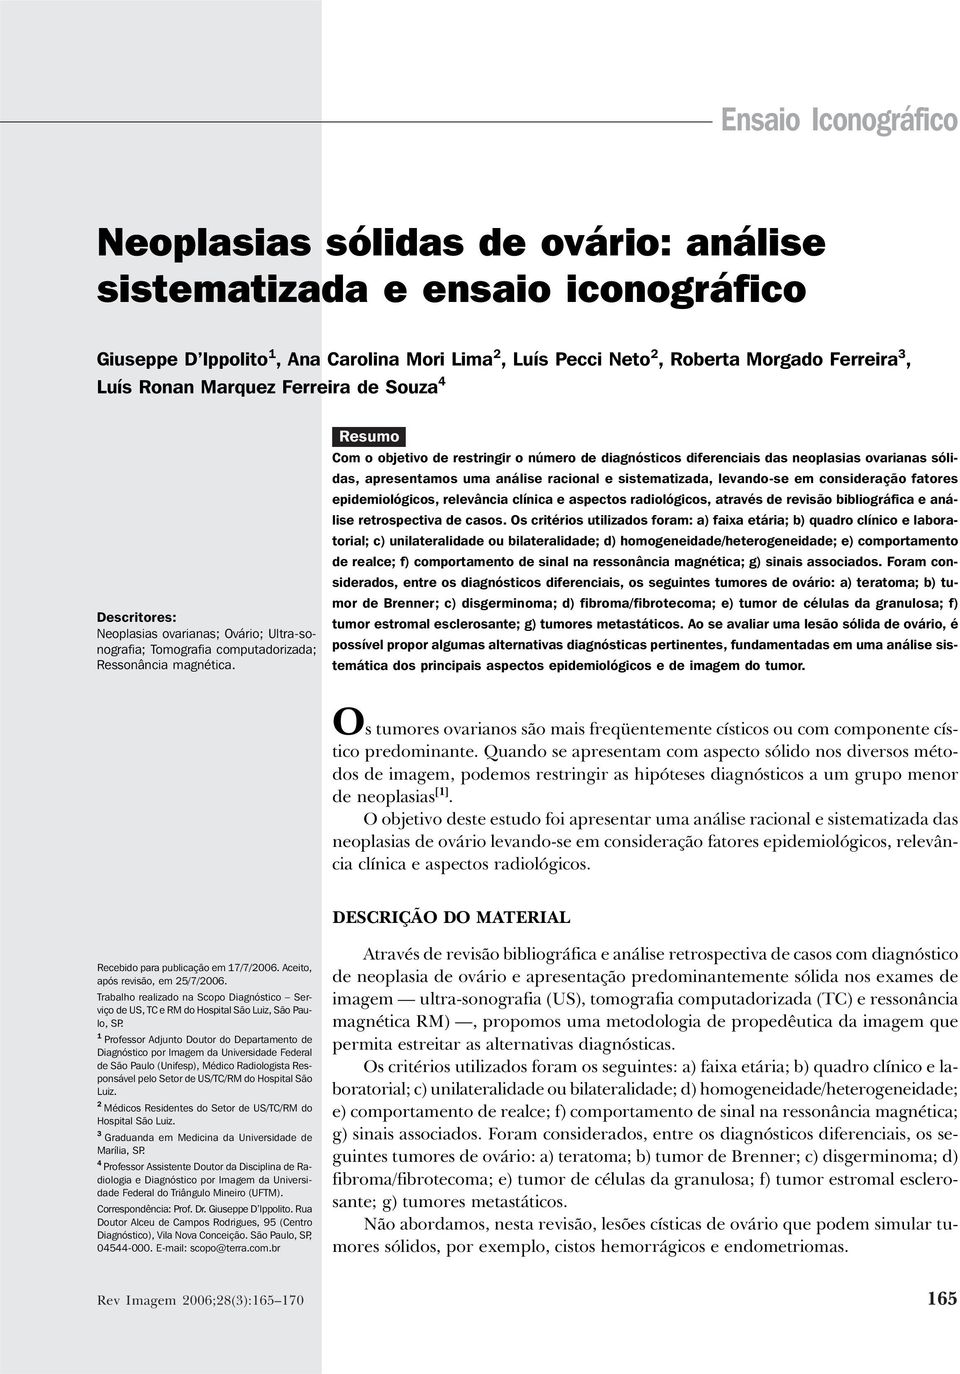 Ronan Marquez Ferreira de Souza 4 Descritores: Neoplasias ovarianas; Ovário; Ultra-sonografia; Tomografia computadorizada; Ressonância magnética.